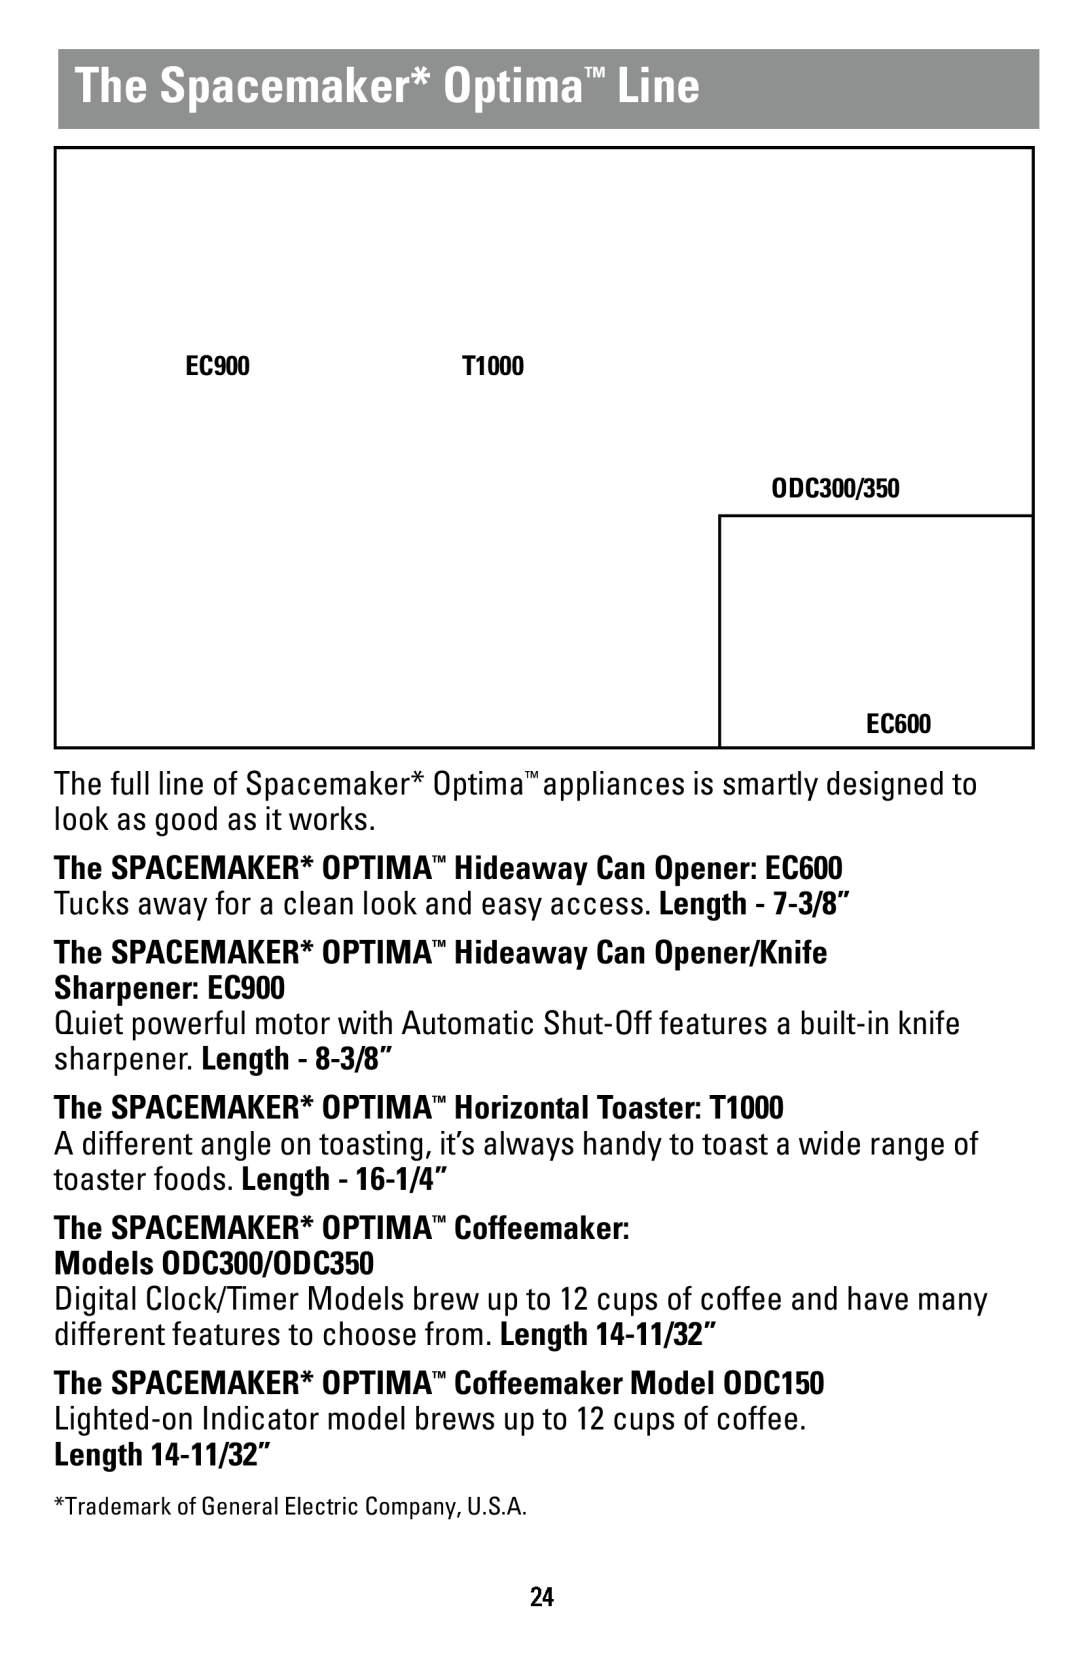 Black & Decker T1000 manual The Spacemaker* Optima Line, The SPACEMAKER* OPTIMA Hideaway Can Opener/Knife Sharpener EC900 